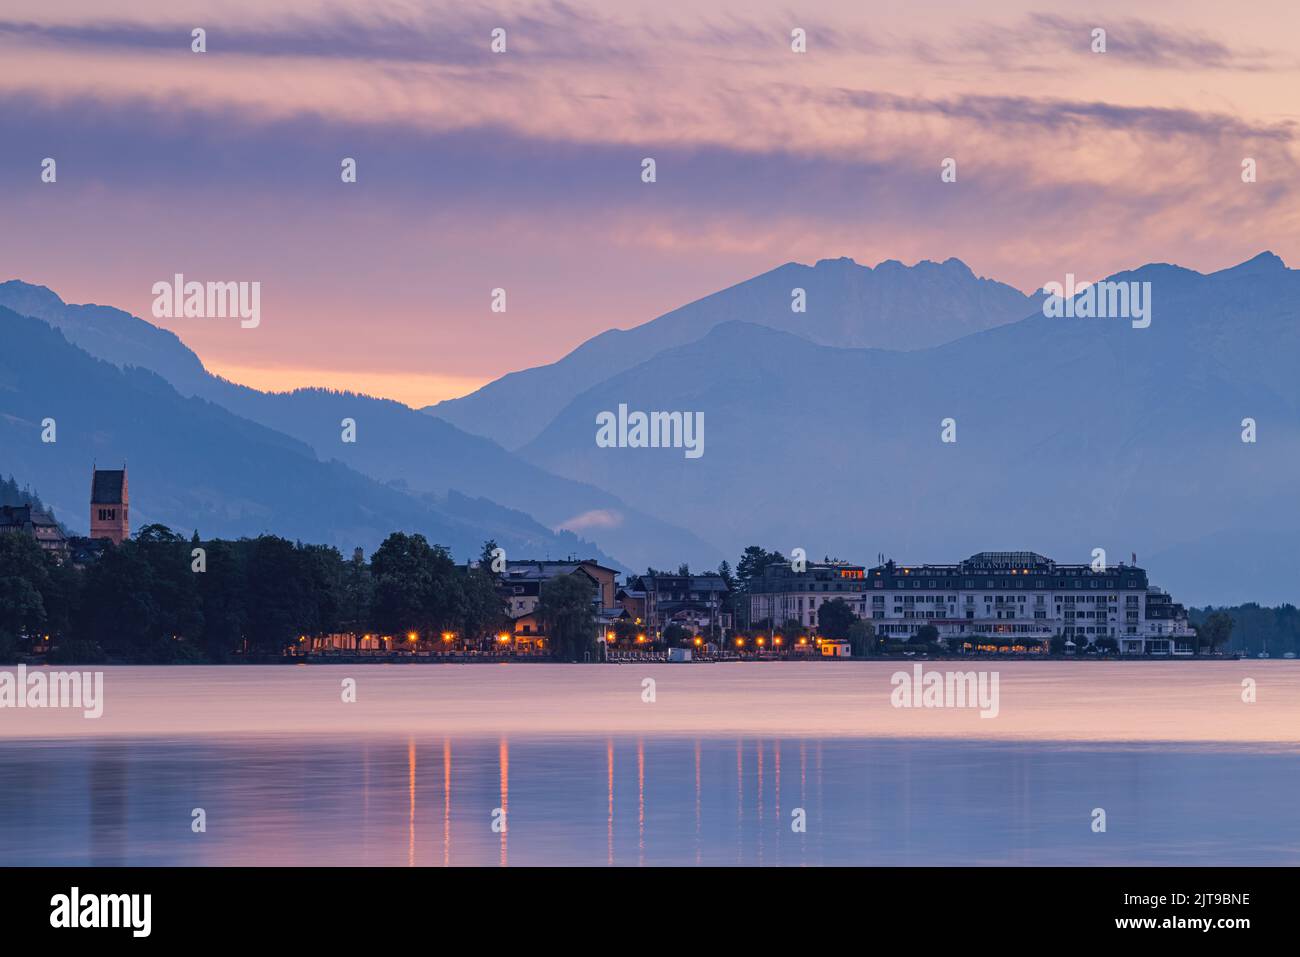 Amanecer temprano en verano en Zell am See, Acity situado en Zeller See, un lago en el centro de Austria con acceso a Kaprun y el Alto Großglockner Foto de stock